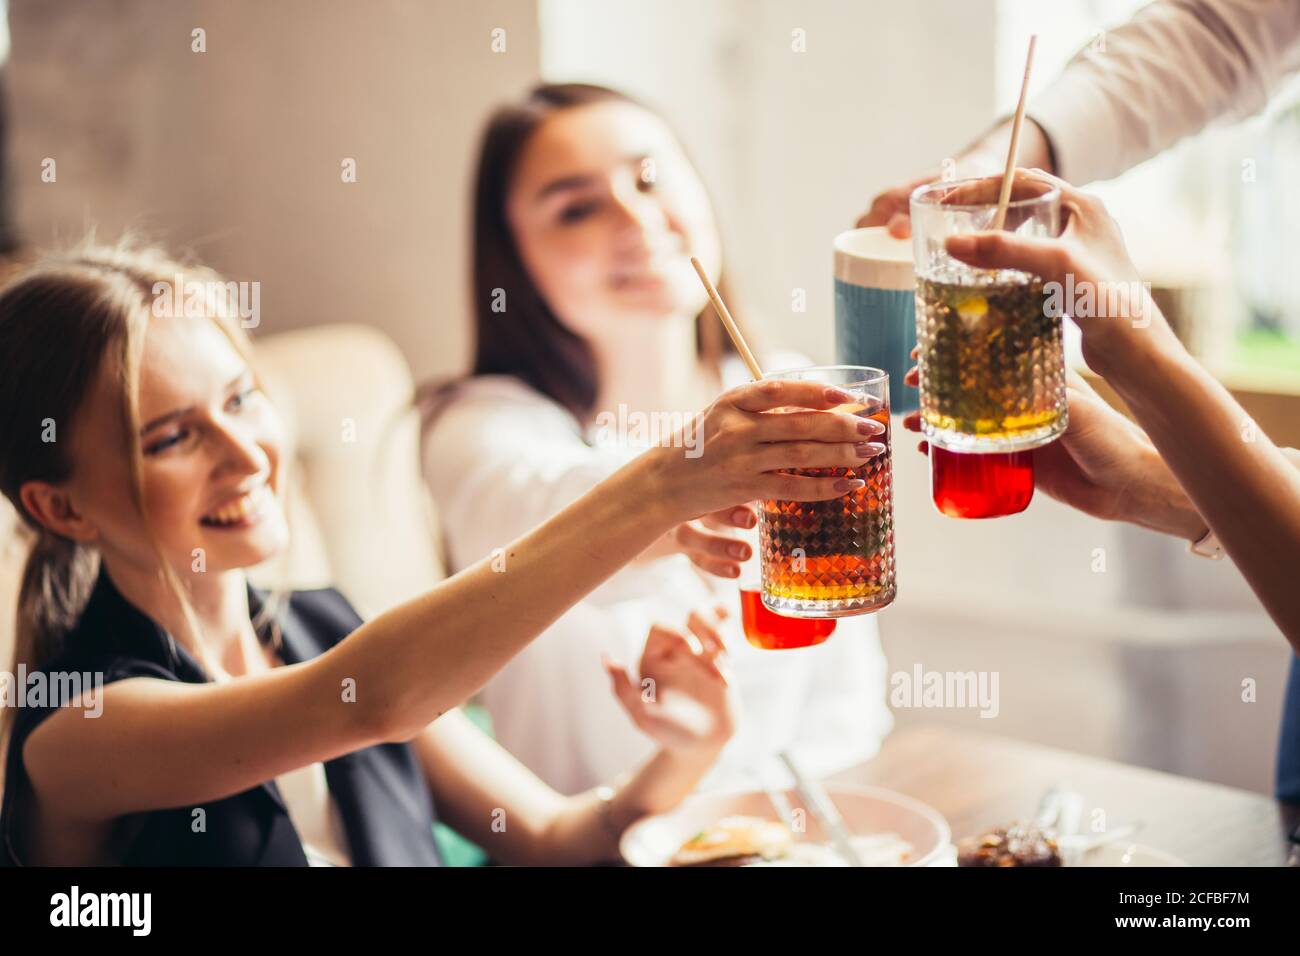 Persone Cheers celebrazione Toast felicità stare insieme concetto Foto Stock